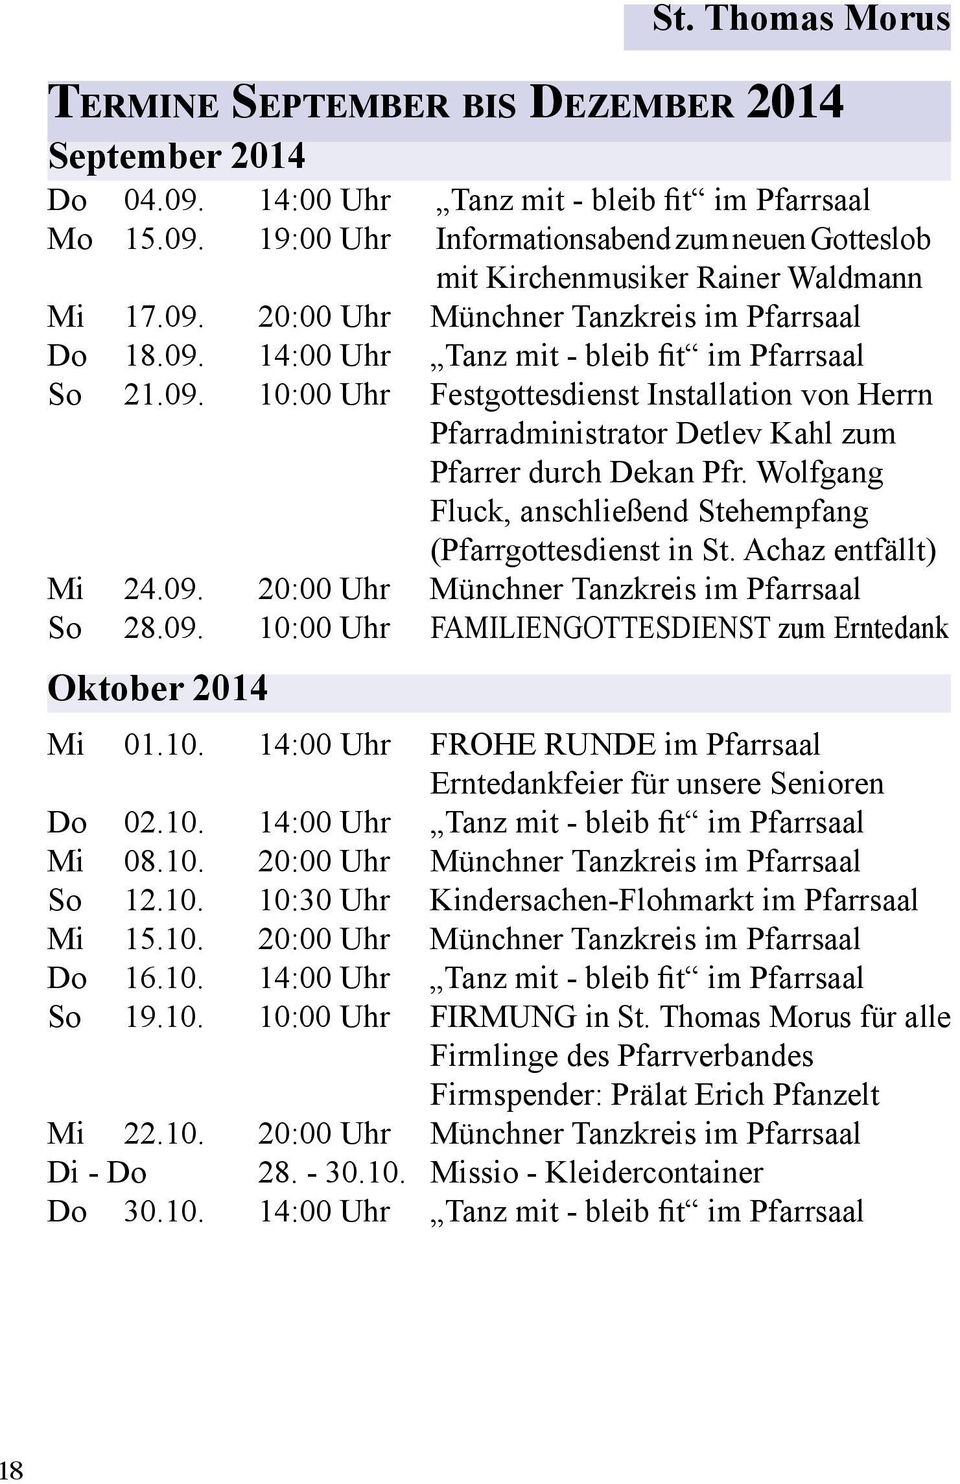 Wolfgang Fluck, anschließend Stehempfang (Pfarrgottesdienst in St. Achaz entfällt) Mi 24.09. 20:00 Uhr Münchner Tanzkreis im Pfarrsaal So 28.09. 10:00 Uhr FAMILIENGOTTESDIENST zum Erntedank Oktober 2014 Mi 01.